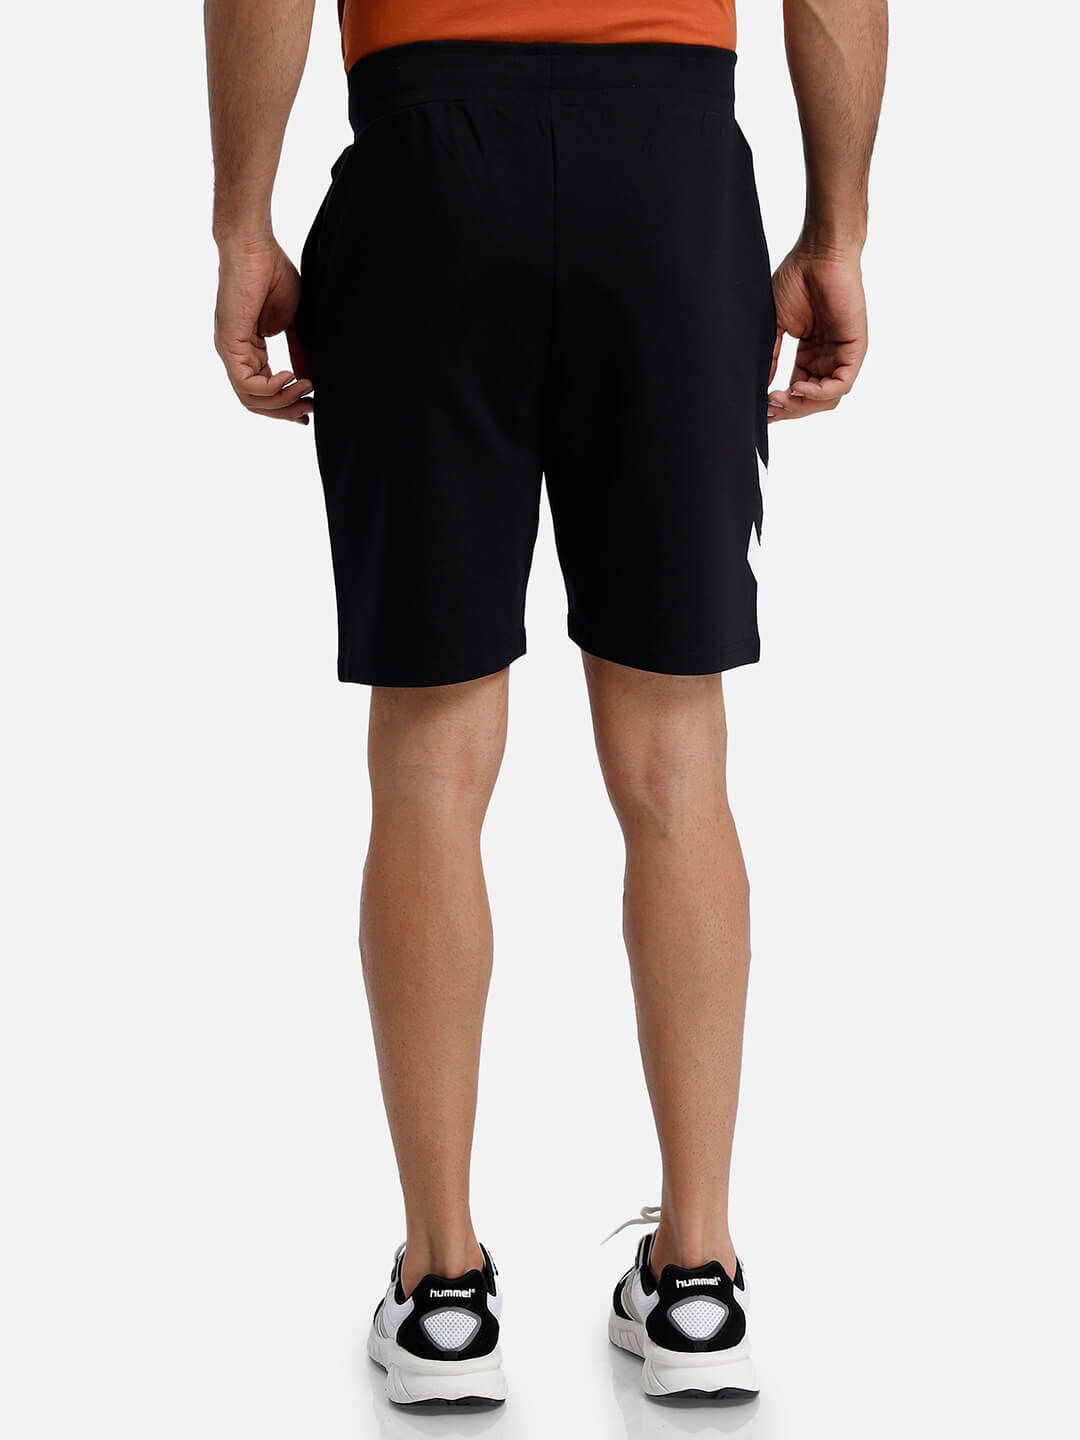 Chevs Black Shorts for Men